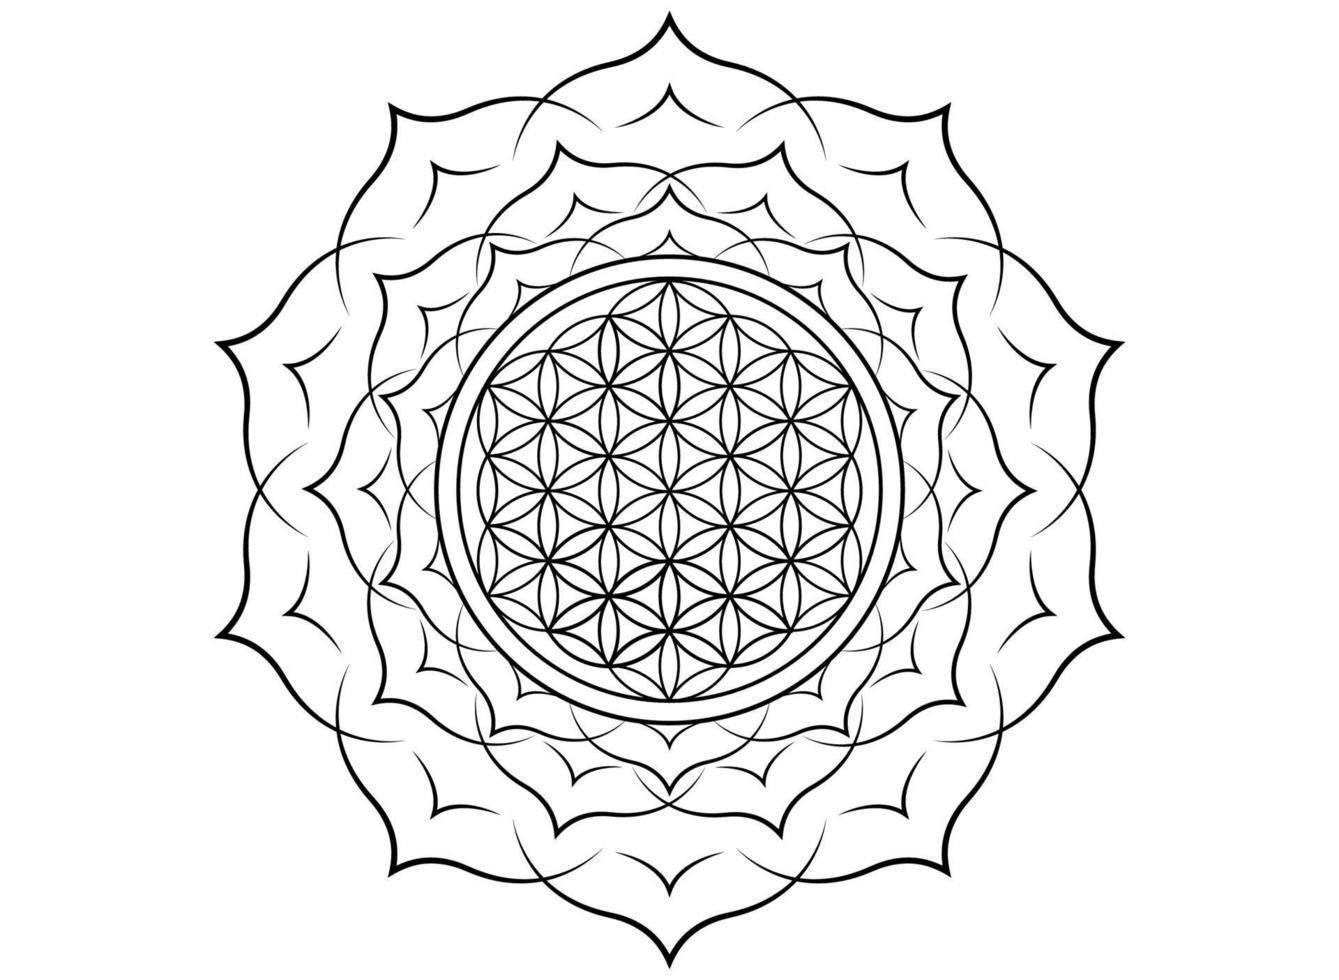 bloem van het leven, yantra mandala in de lotusbloem, heilige geometrie. zwarte print tattoo symbool van harmonie en balans. mystieke talisman, vector geïsoleerd op een witte achtergrond